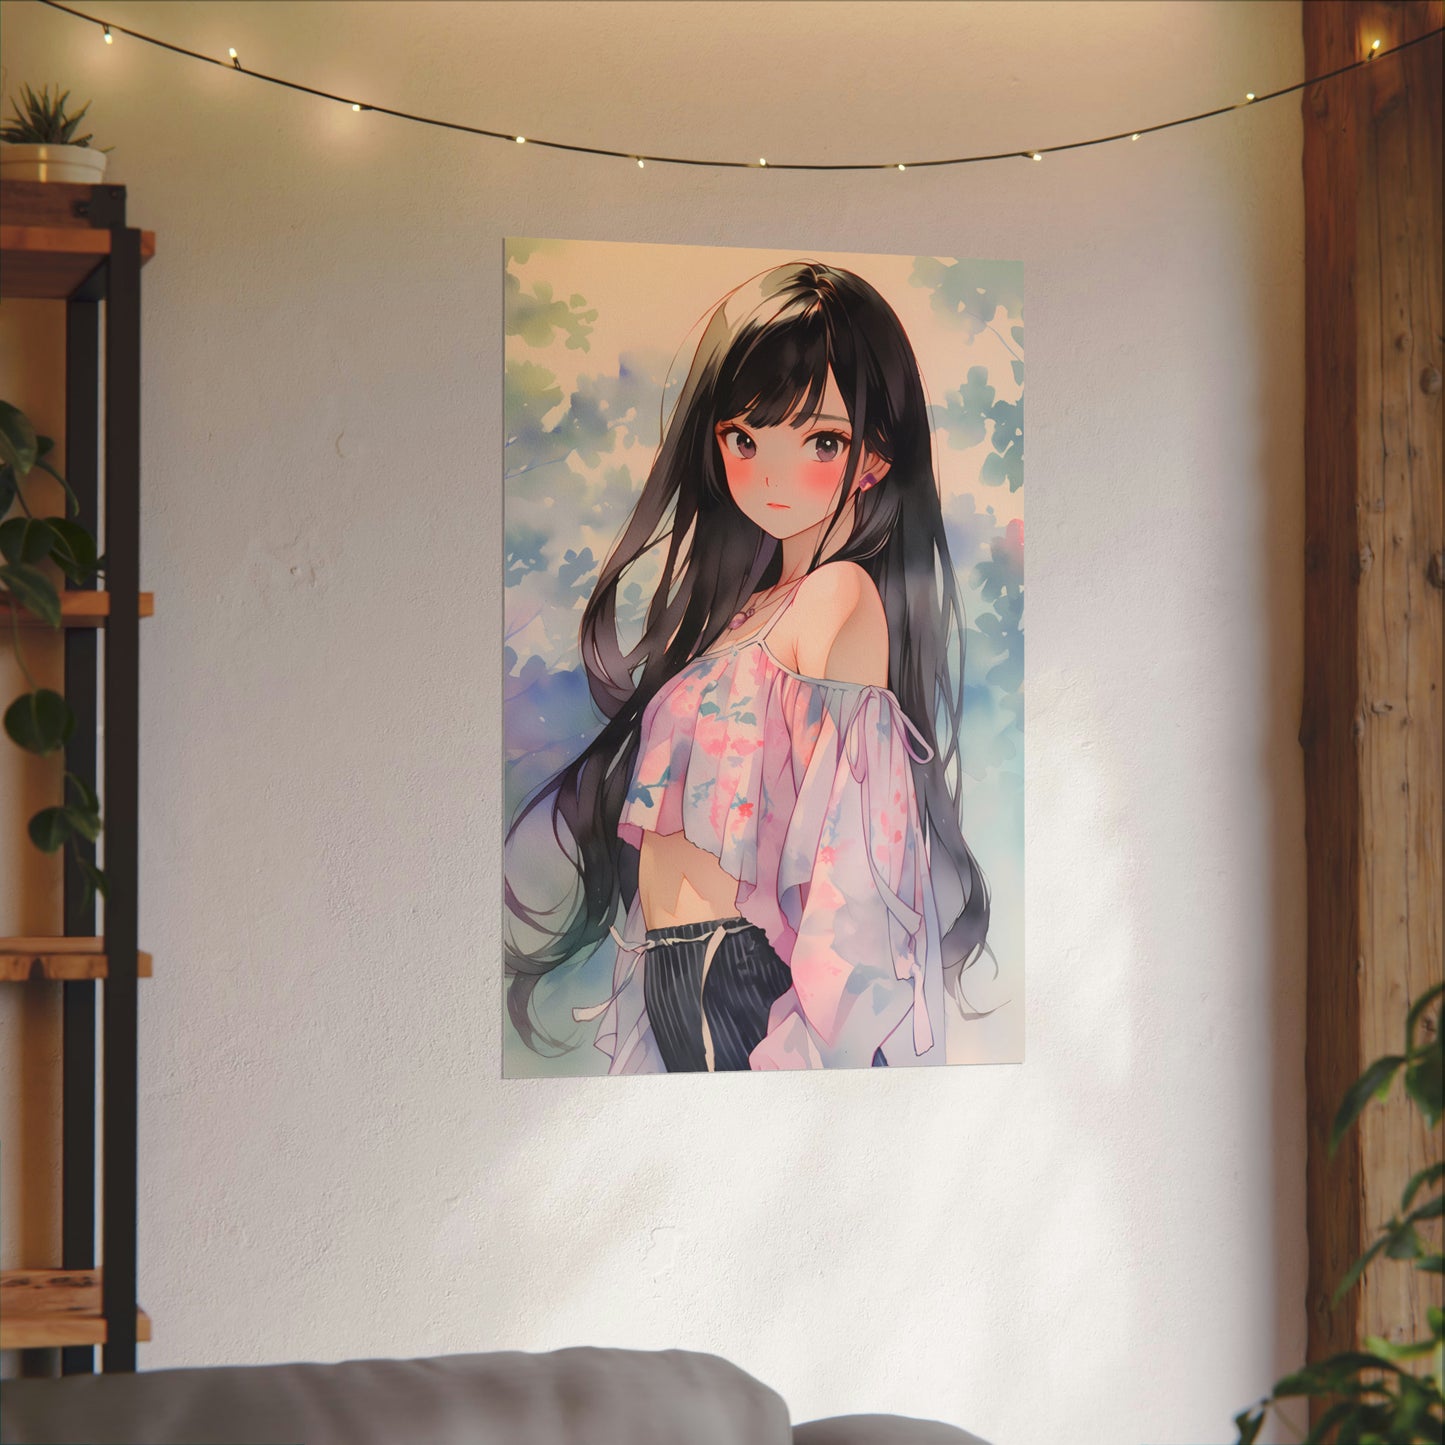 Ceinah Guardian of Leiresah - Anime Girl Watercolor Poster